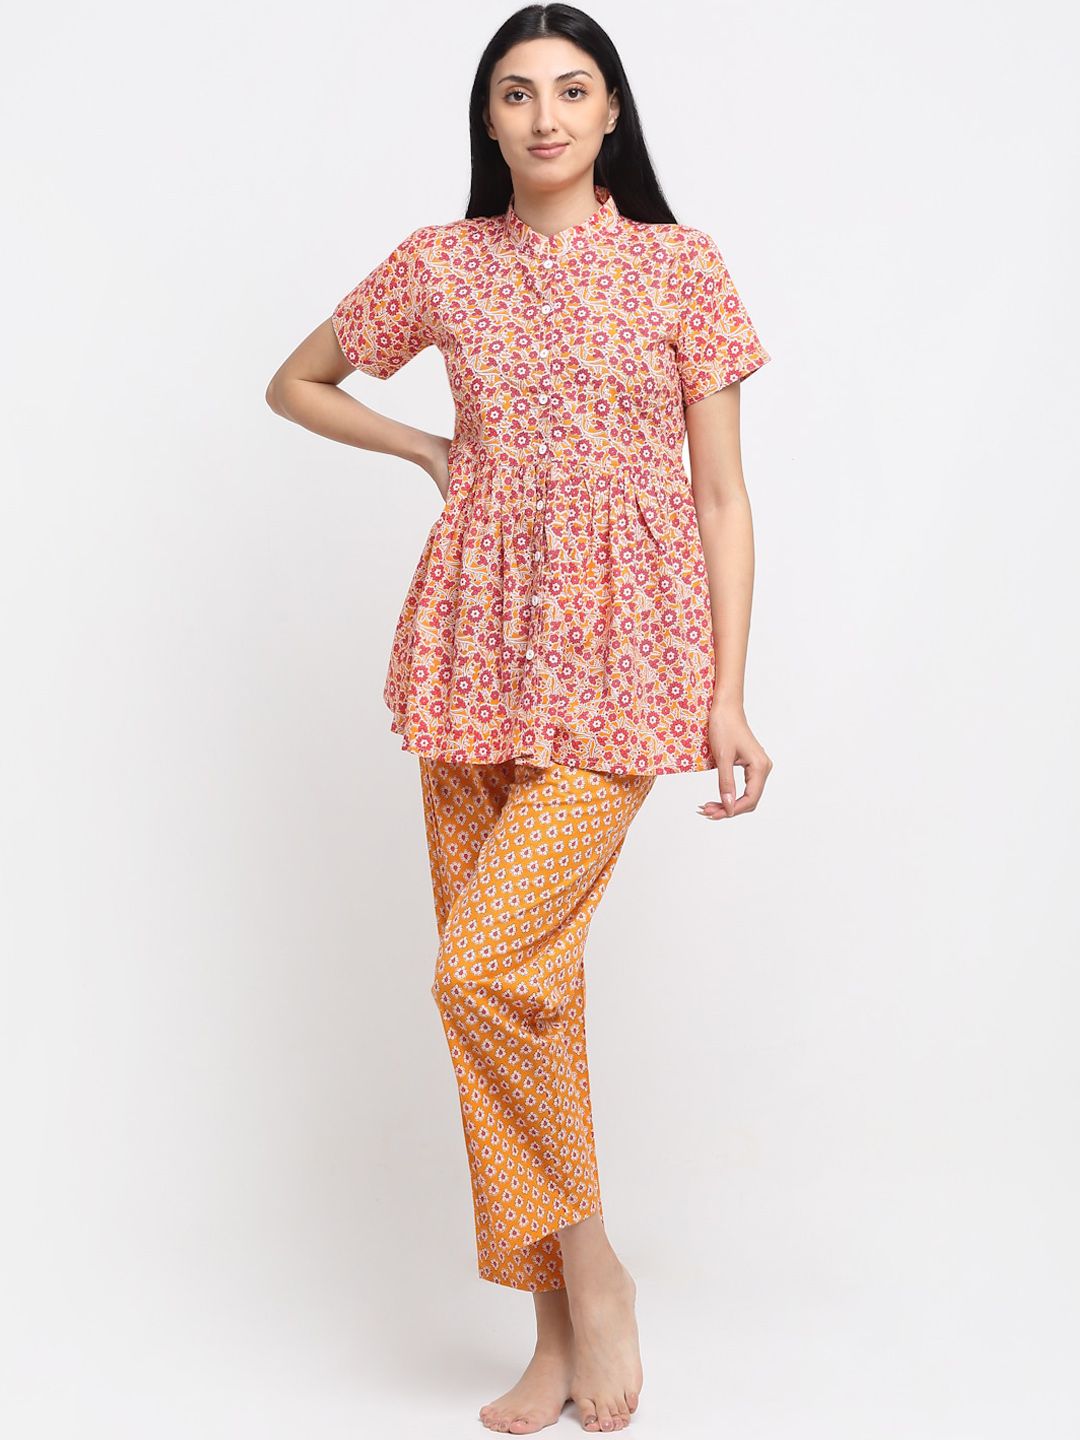 NEUDIS Women Yellow & Pink Cotton Printed Nightsuit Price in India